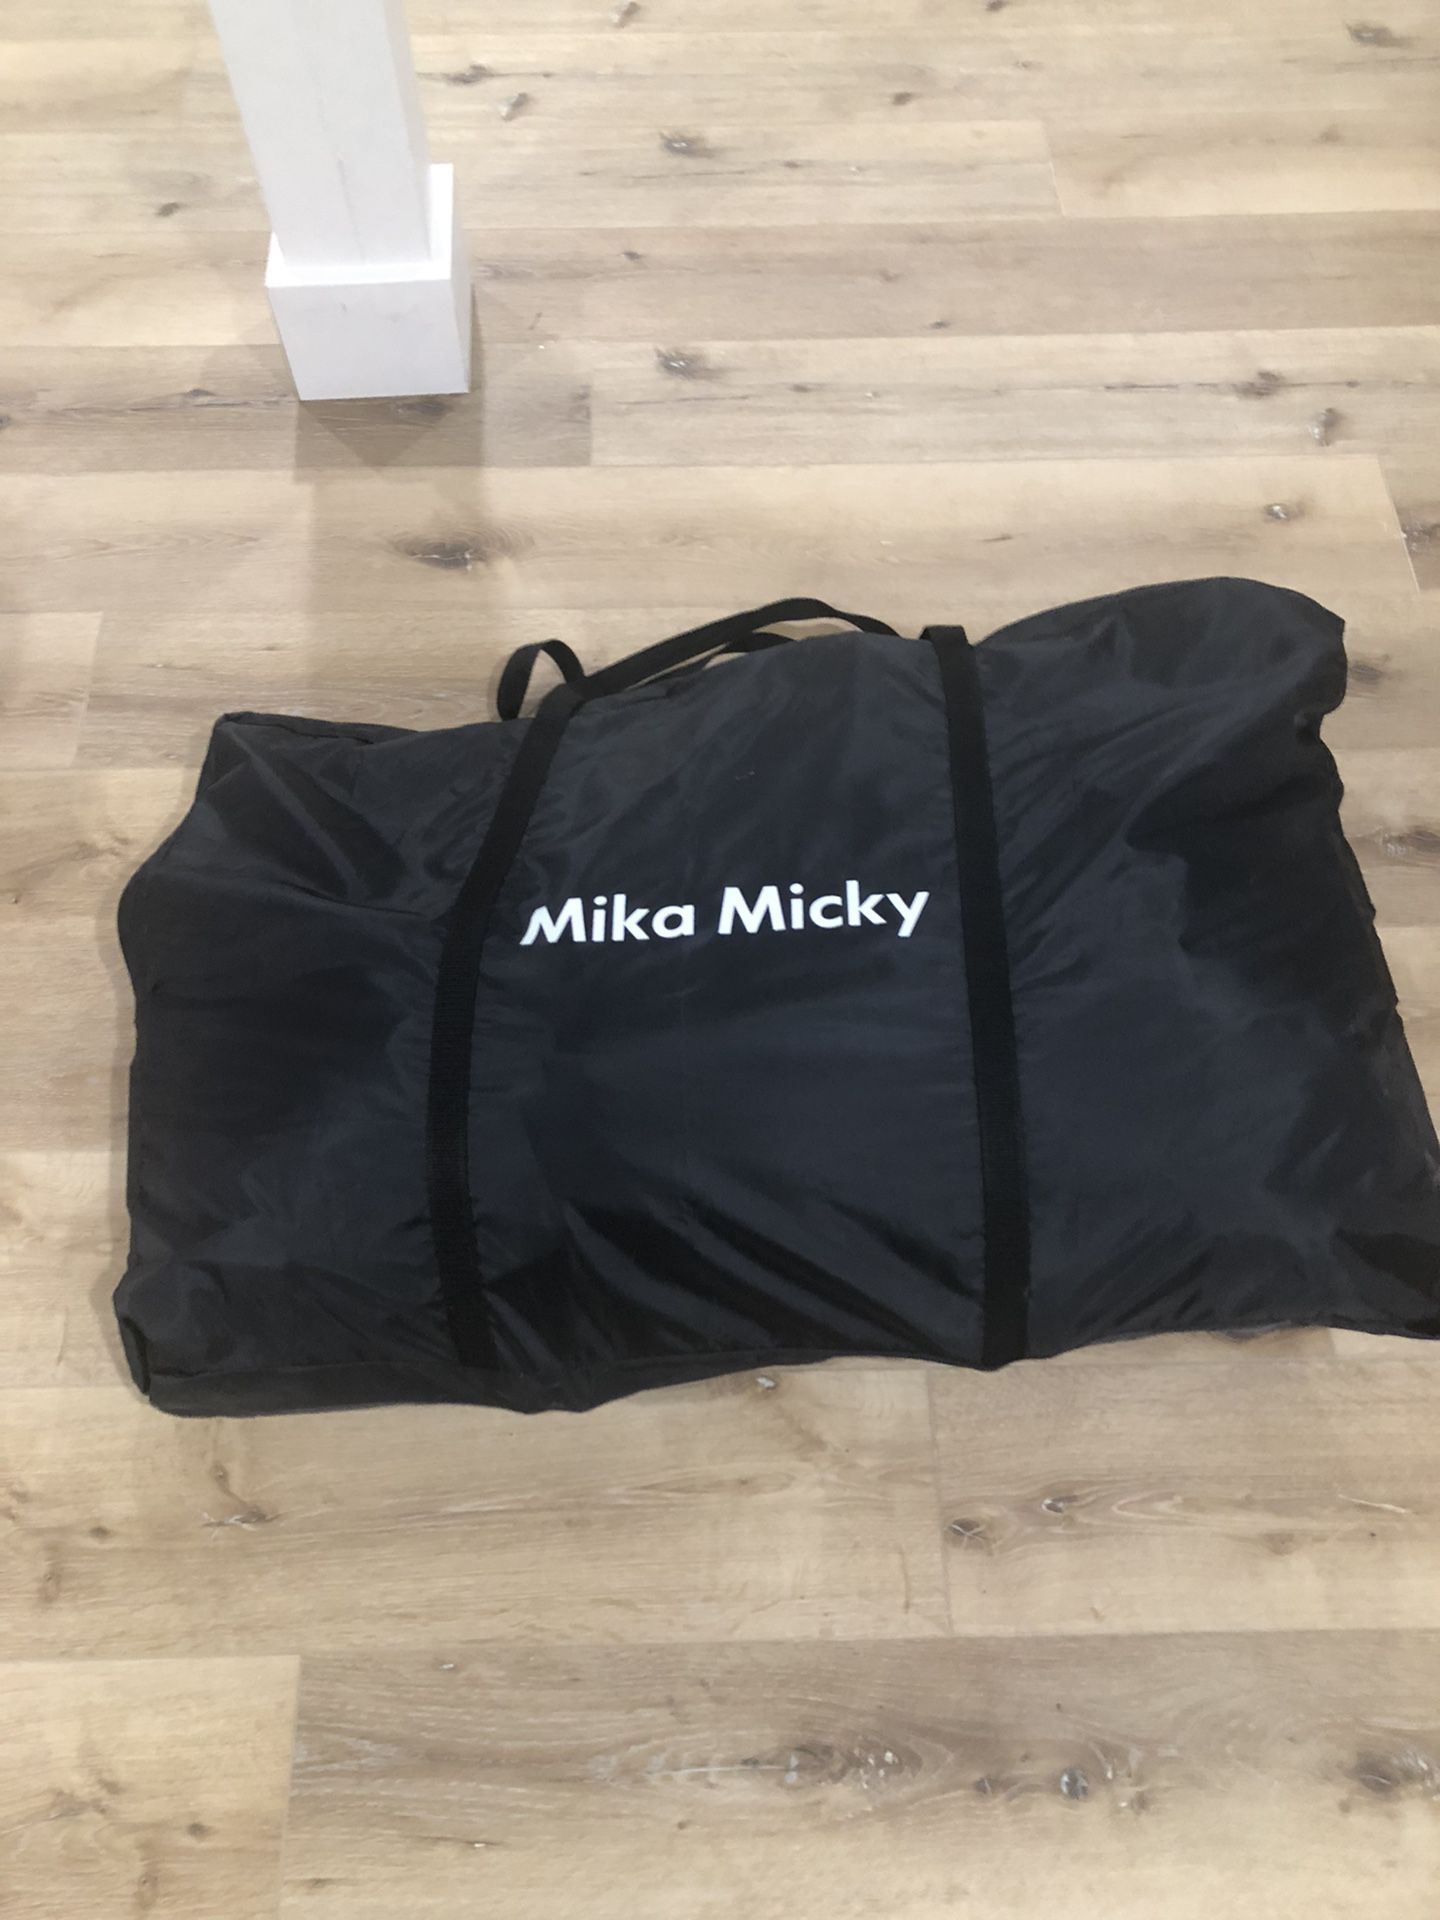 Mika Micky Bedside Bassinet